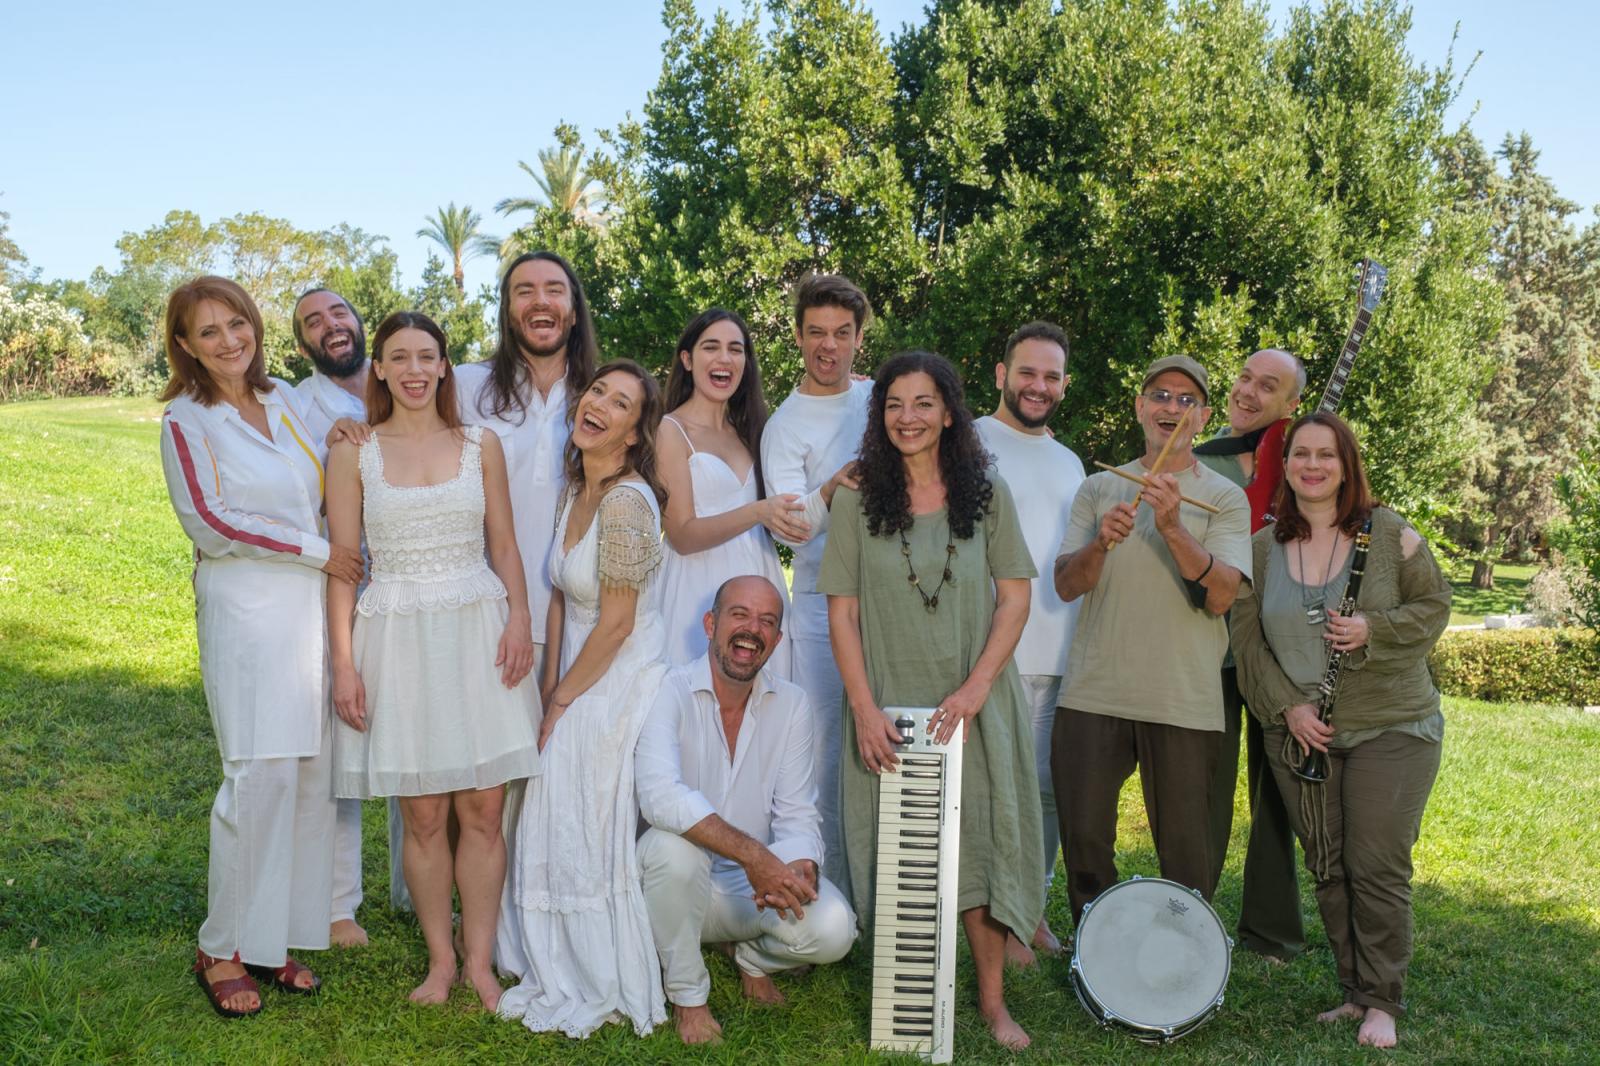 Κερδίστε 2 διπλές προσκλήσεις για την μουσικοθεατρική παράσταση "Ροβινσώνας Κρούσος" στο Μέγαρο Μουσικής Αθηνών